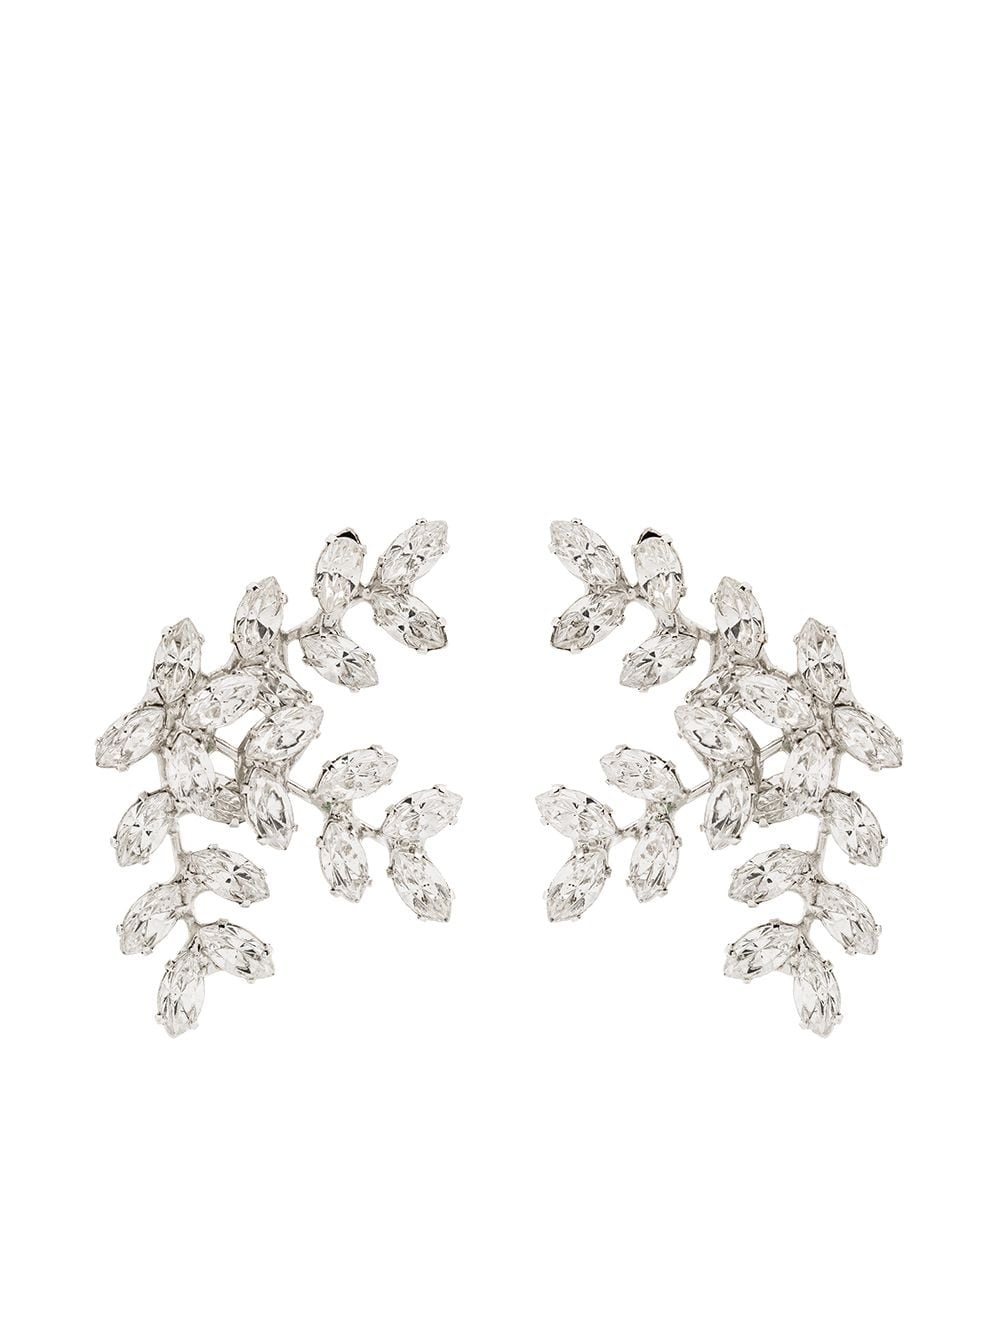 Vignette crystal earrings - 1